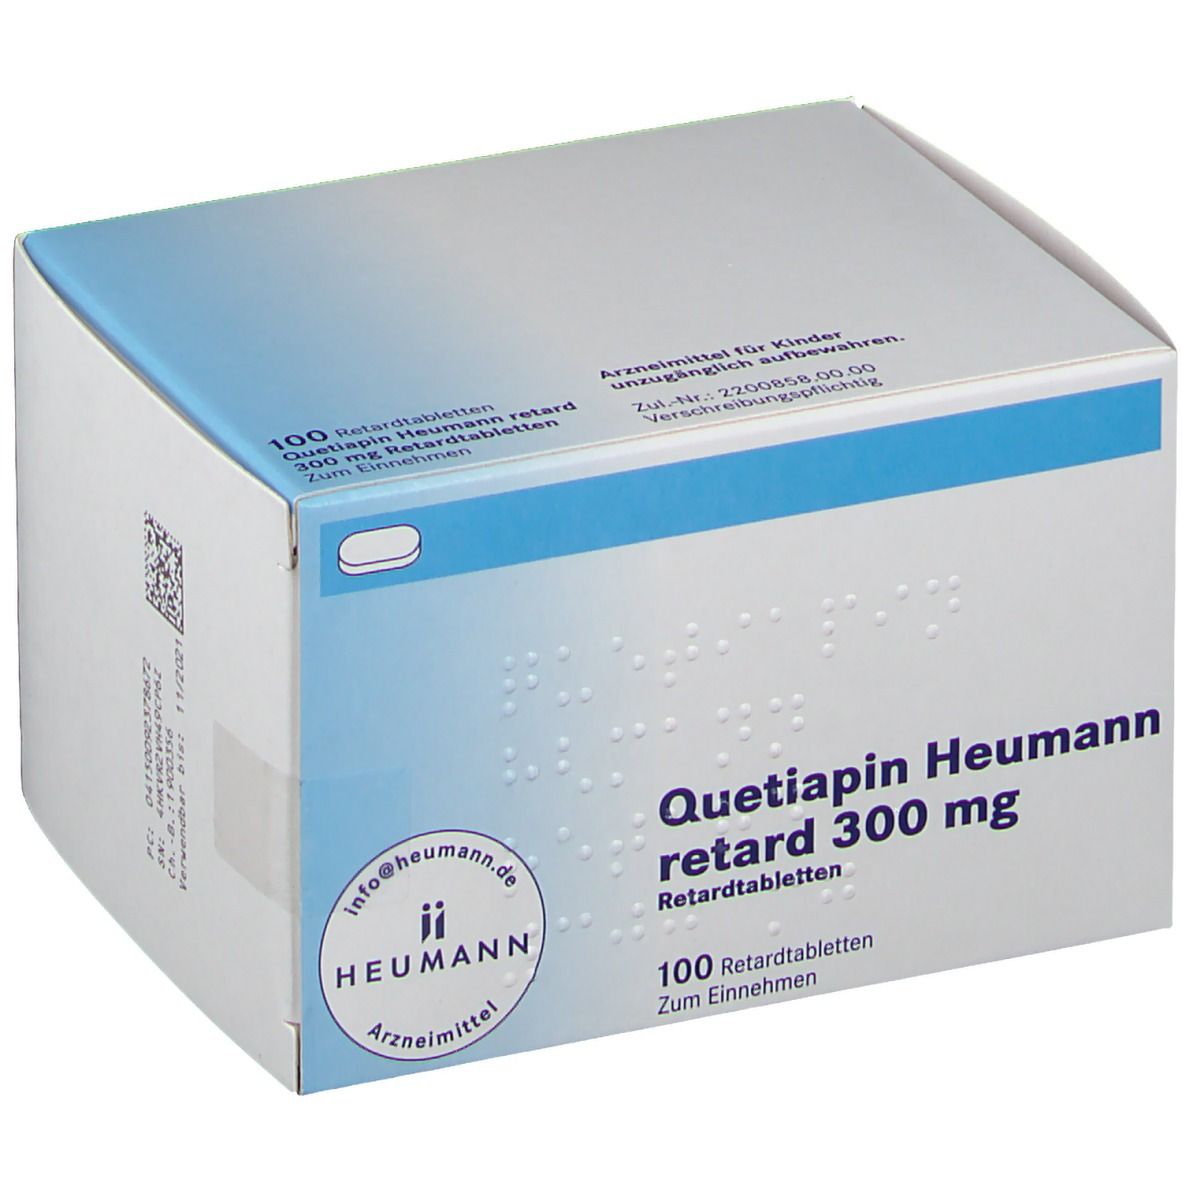 Quetipin Heumann retard 300 mg